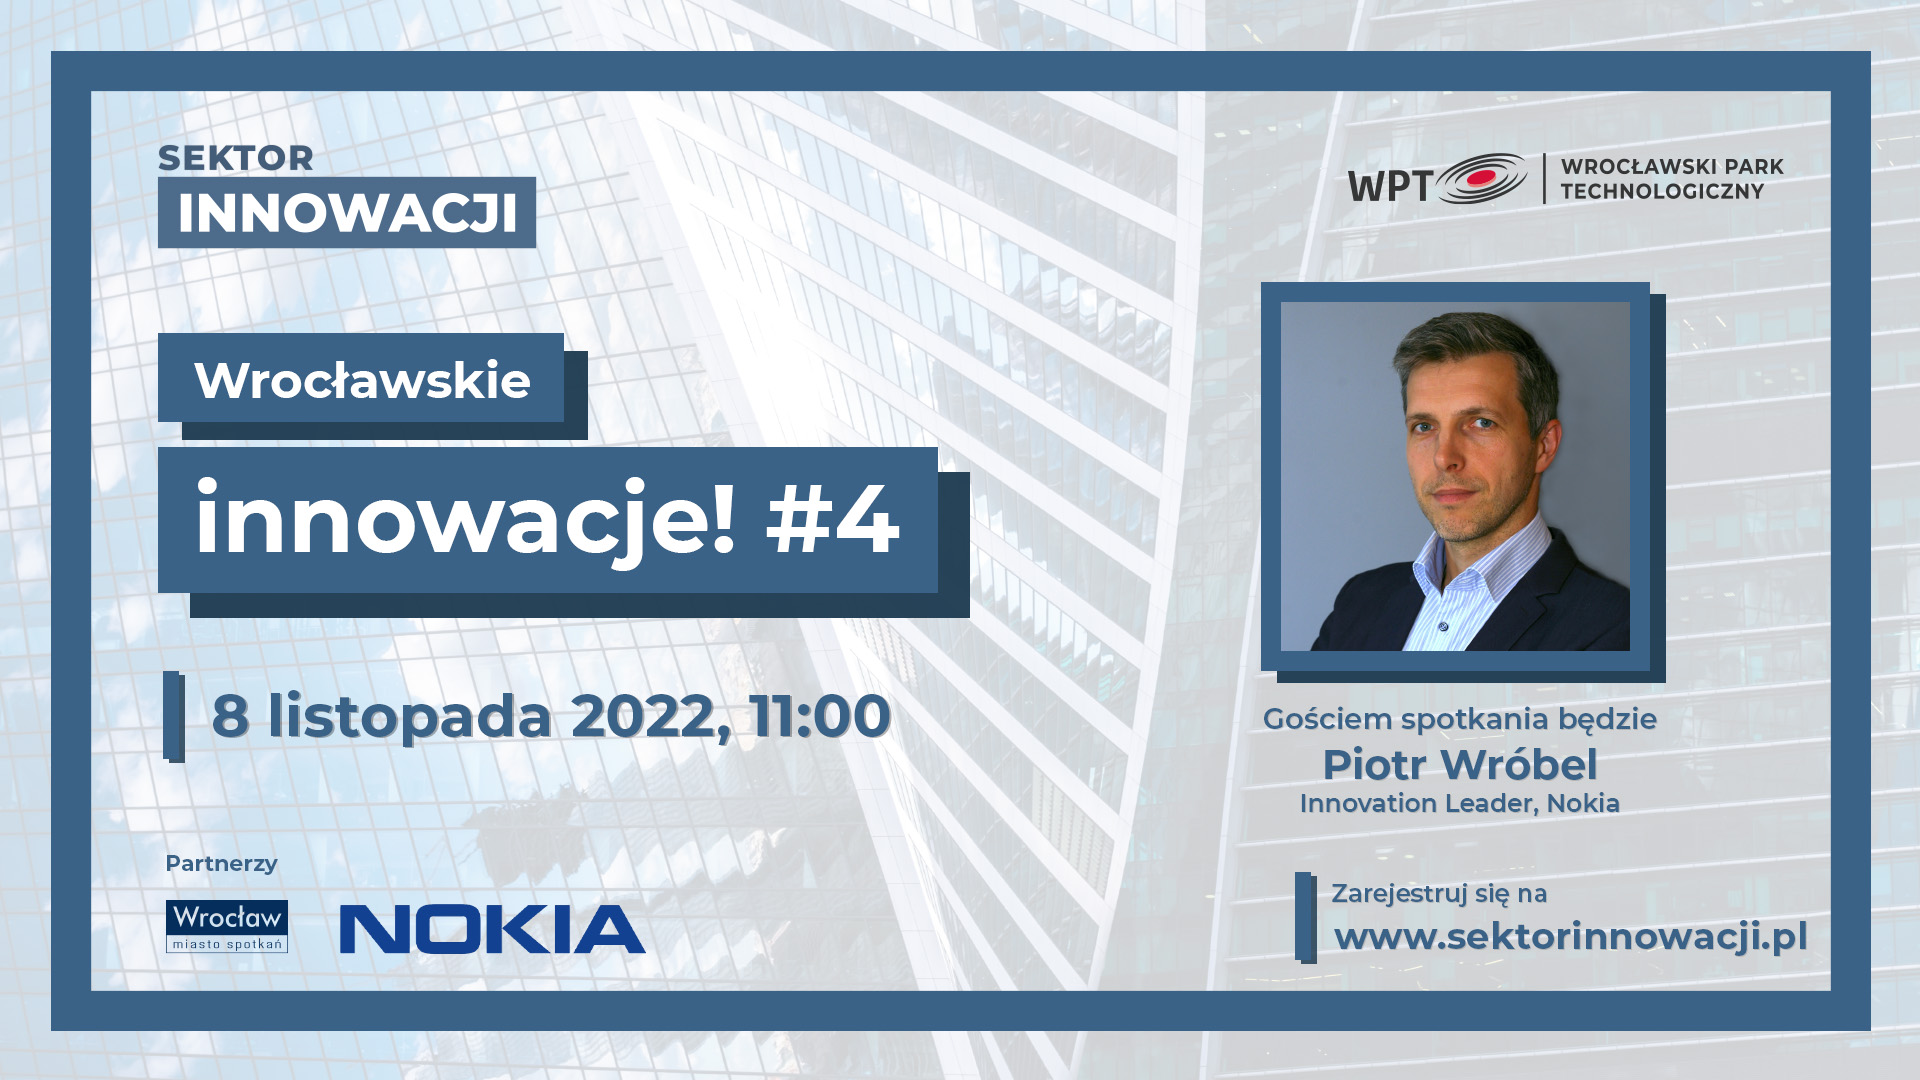 Spotkanie Wrocławskie innowacje #4 już 8 listopada!